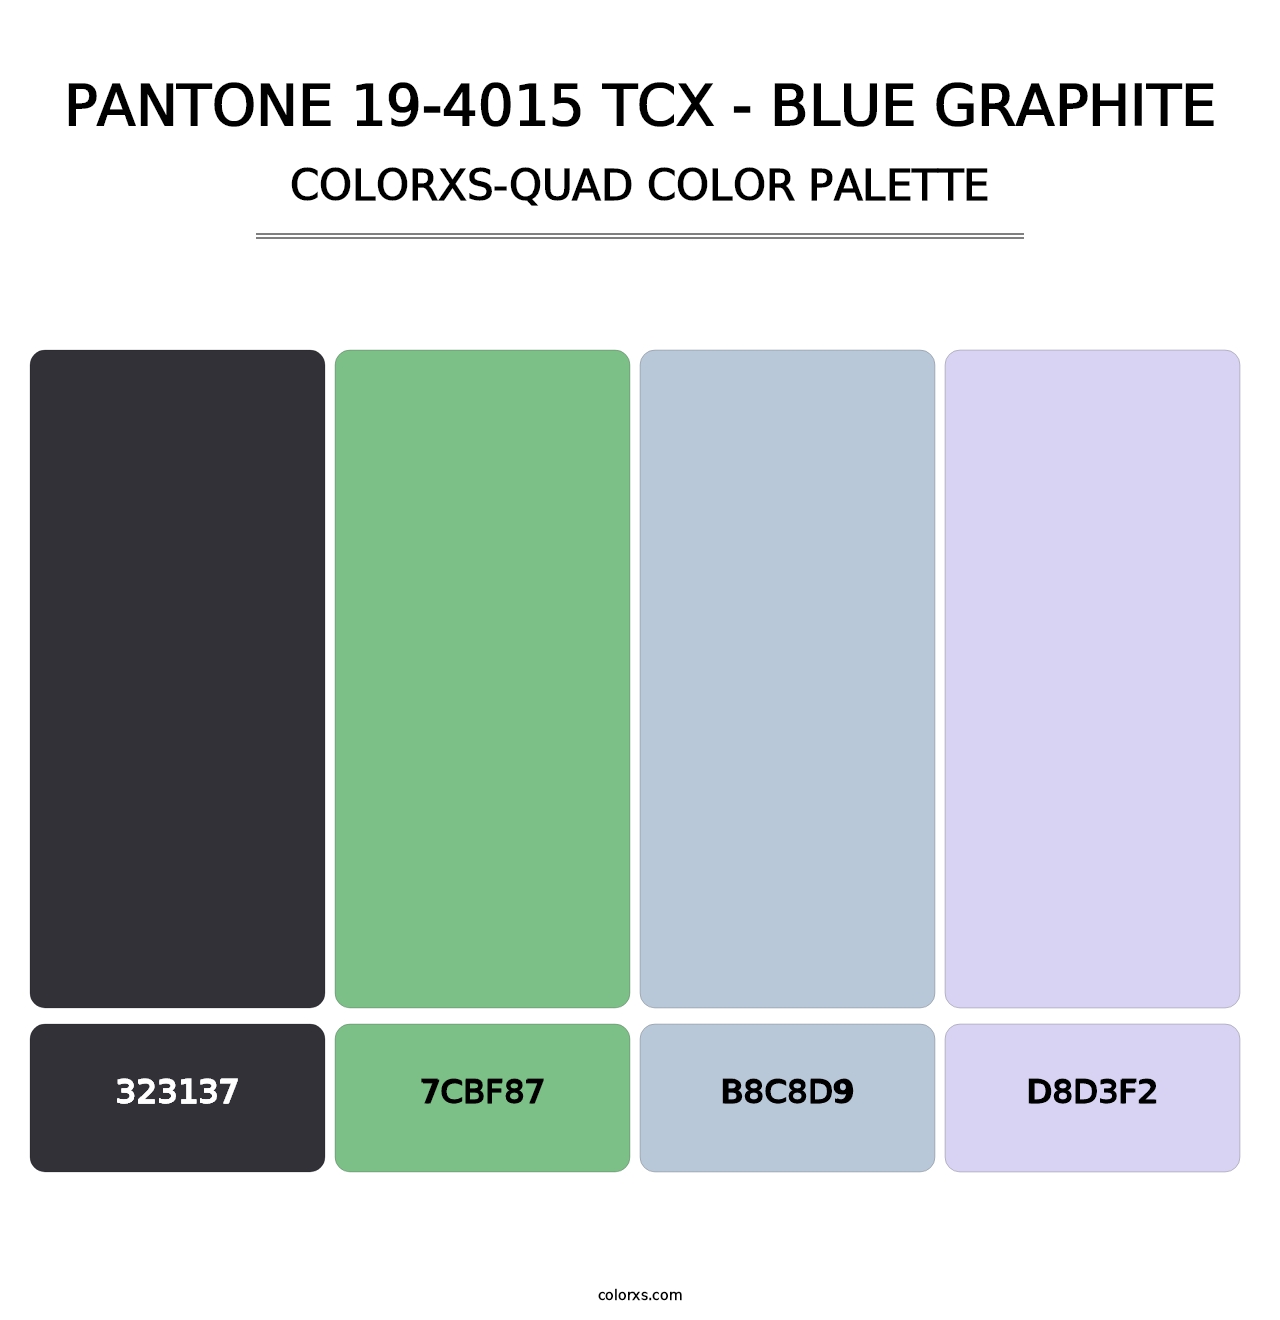 PANTONE 19-4015 TCX - Blue Graphite - Colorxs Quad Palette